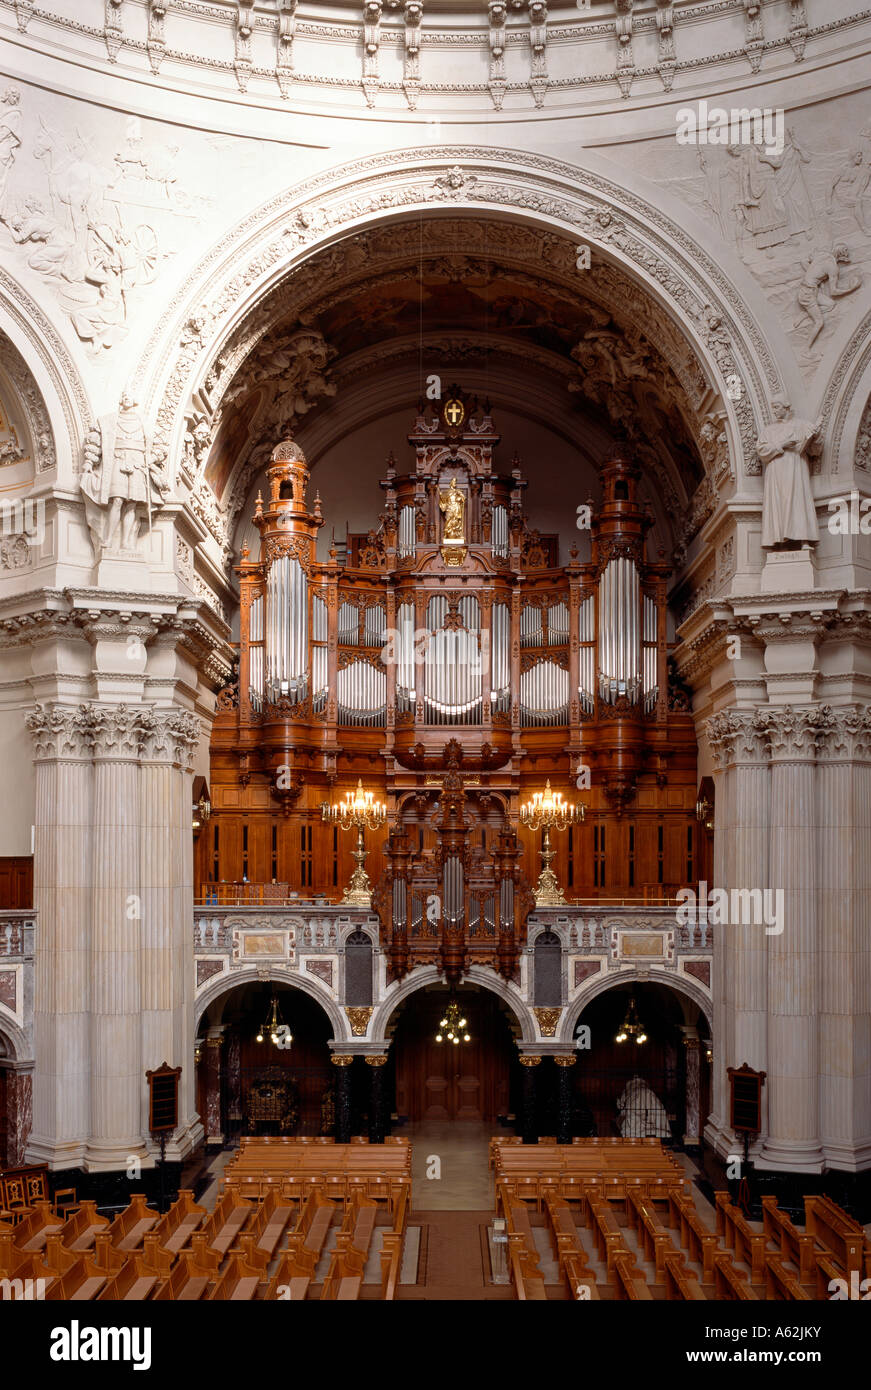 Berlín, Dom, Orgel von Wilhelm Sauer Foto de stock